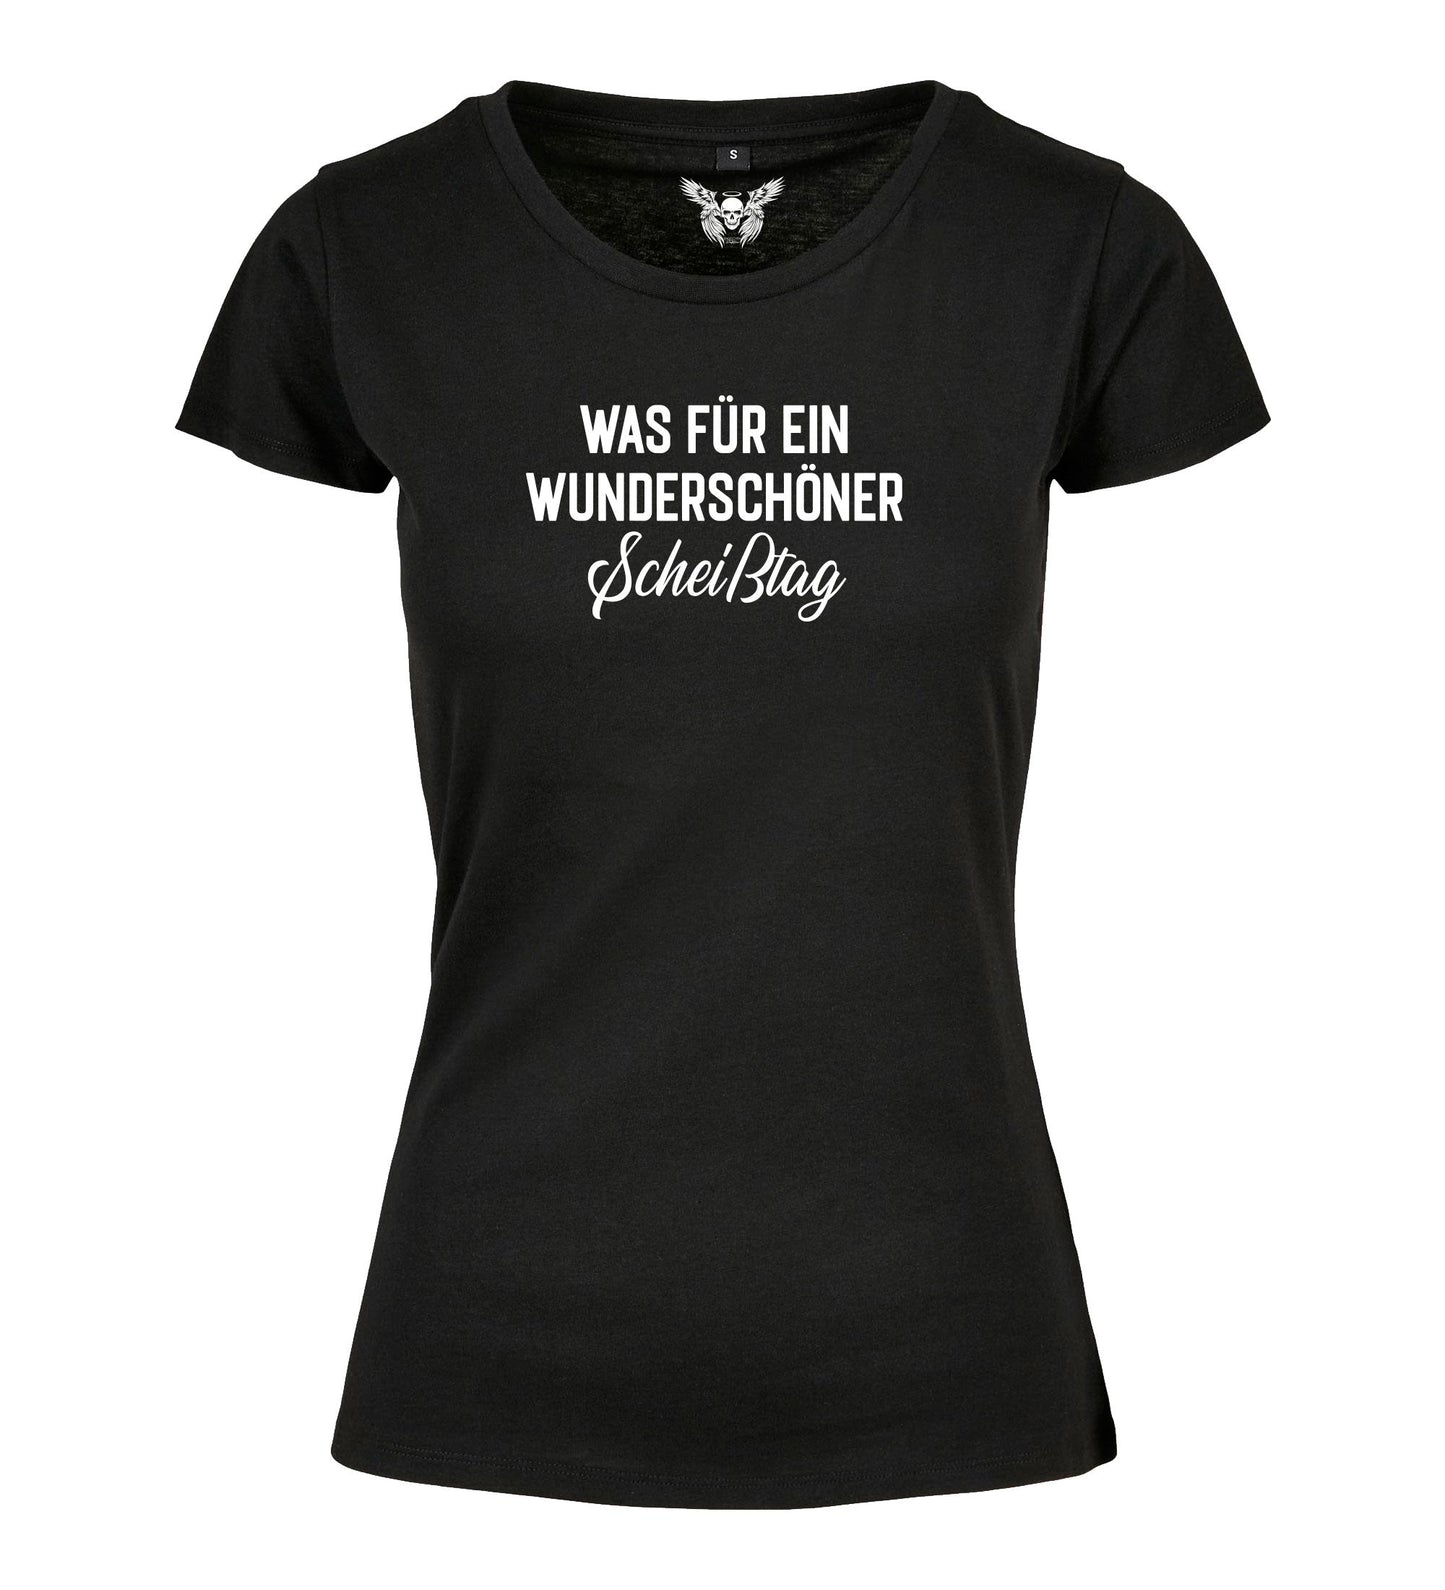 Damen T-Shirt: Was für ein wunderschöner Scheißtag